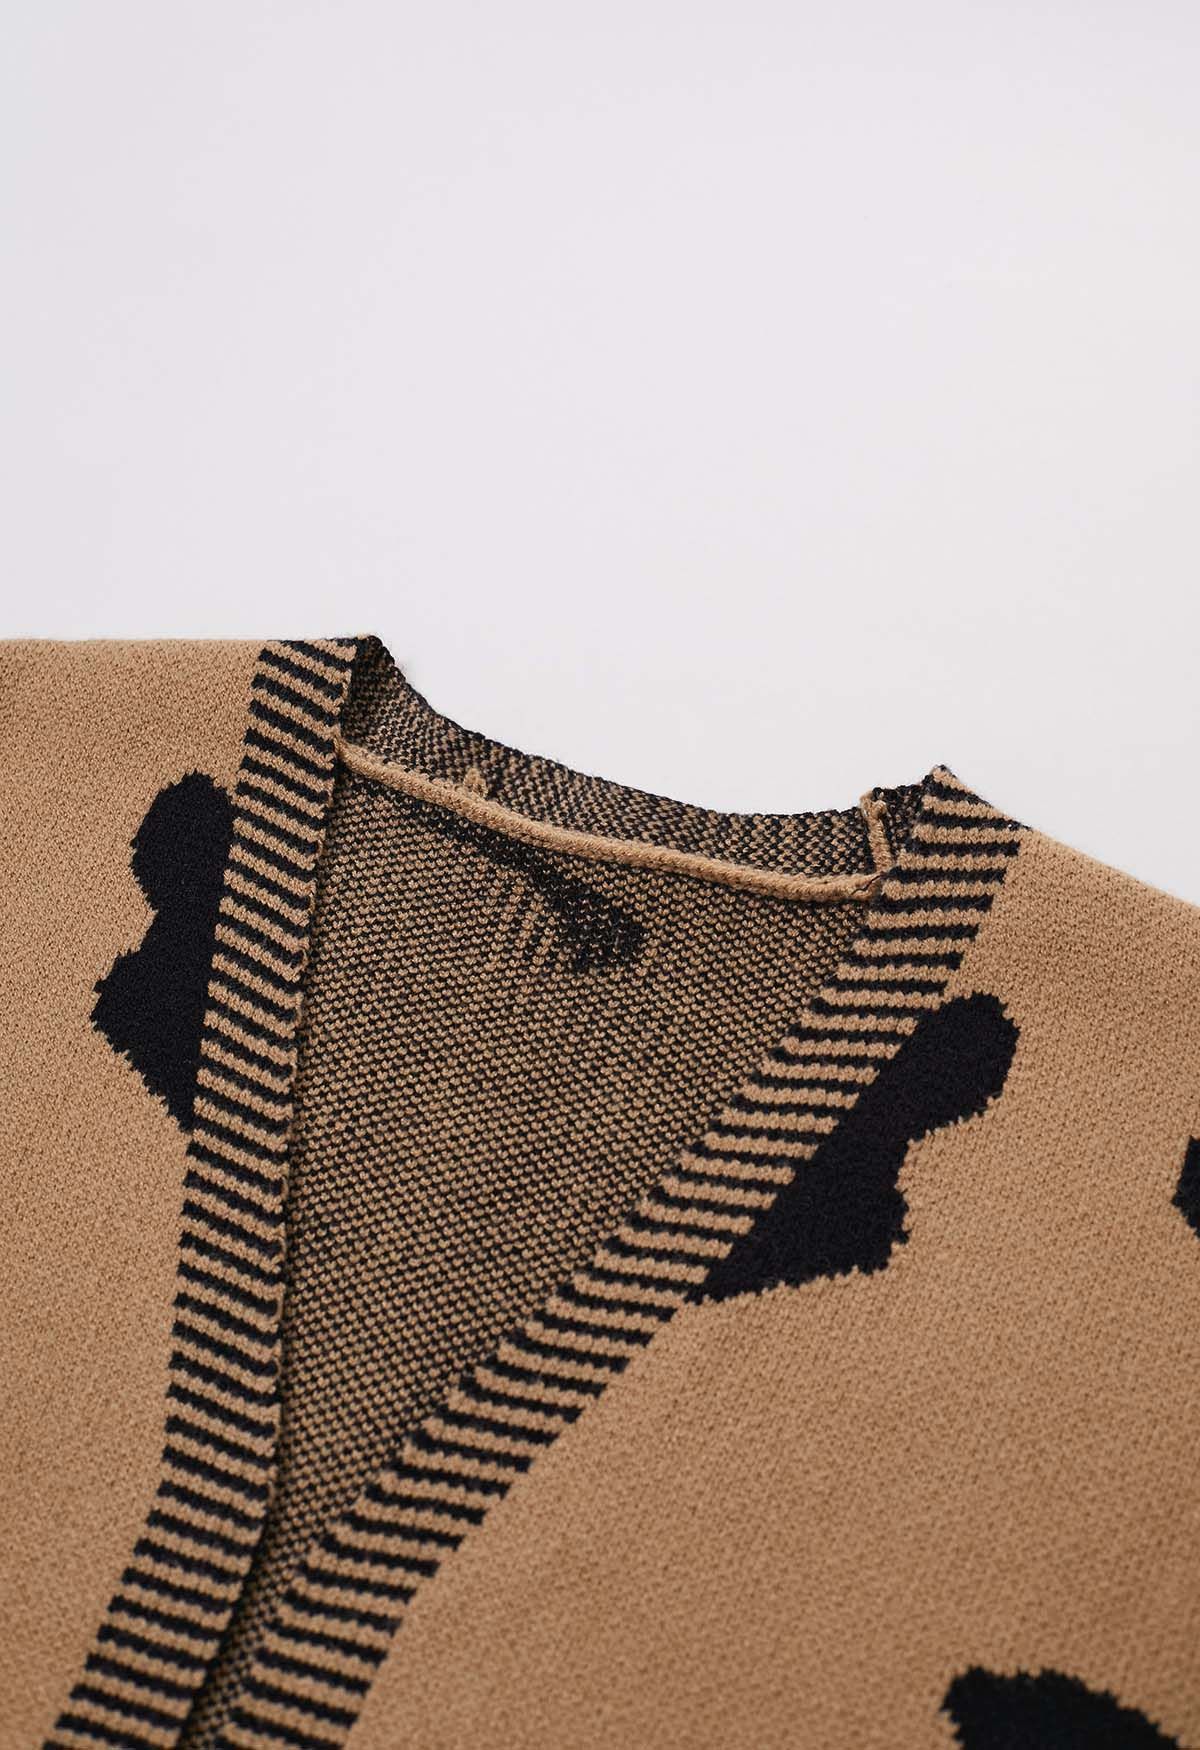 Leopard Pattern Open Front Knit Cardigan